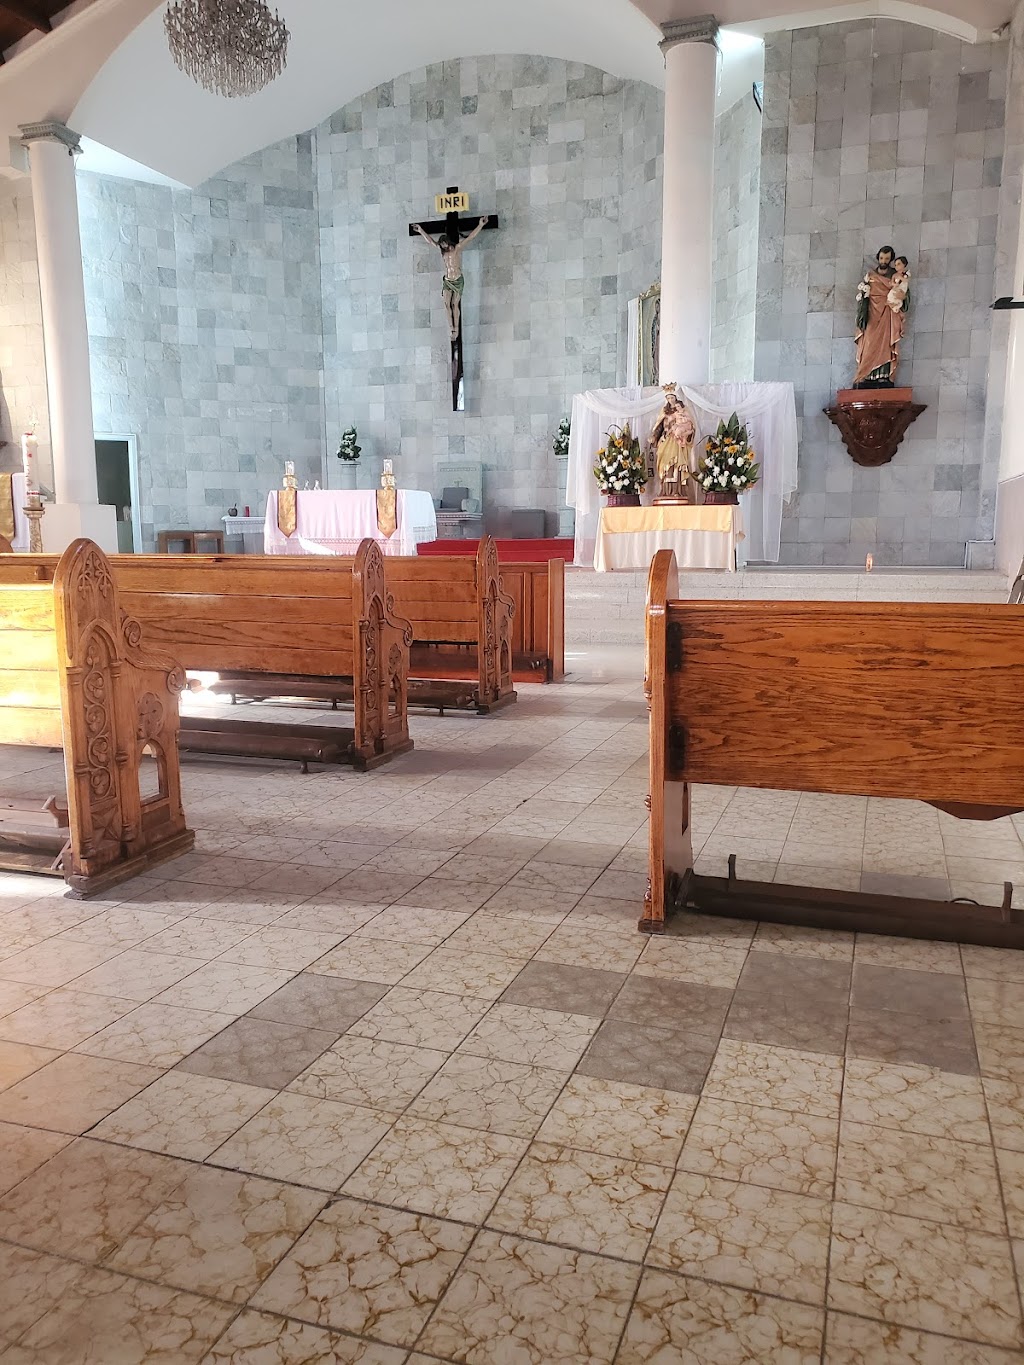 Our Lady of Solitude | primera sur, Del Río, Del Rio, 22416 Tijuana, B.C., Mexico | Phone: 664 682 5363